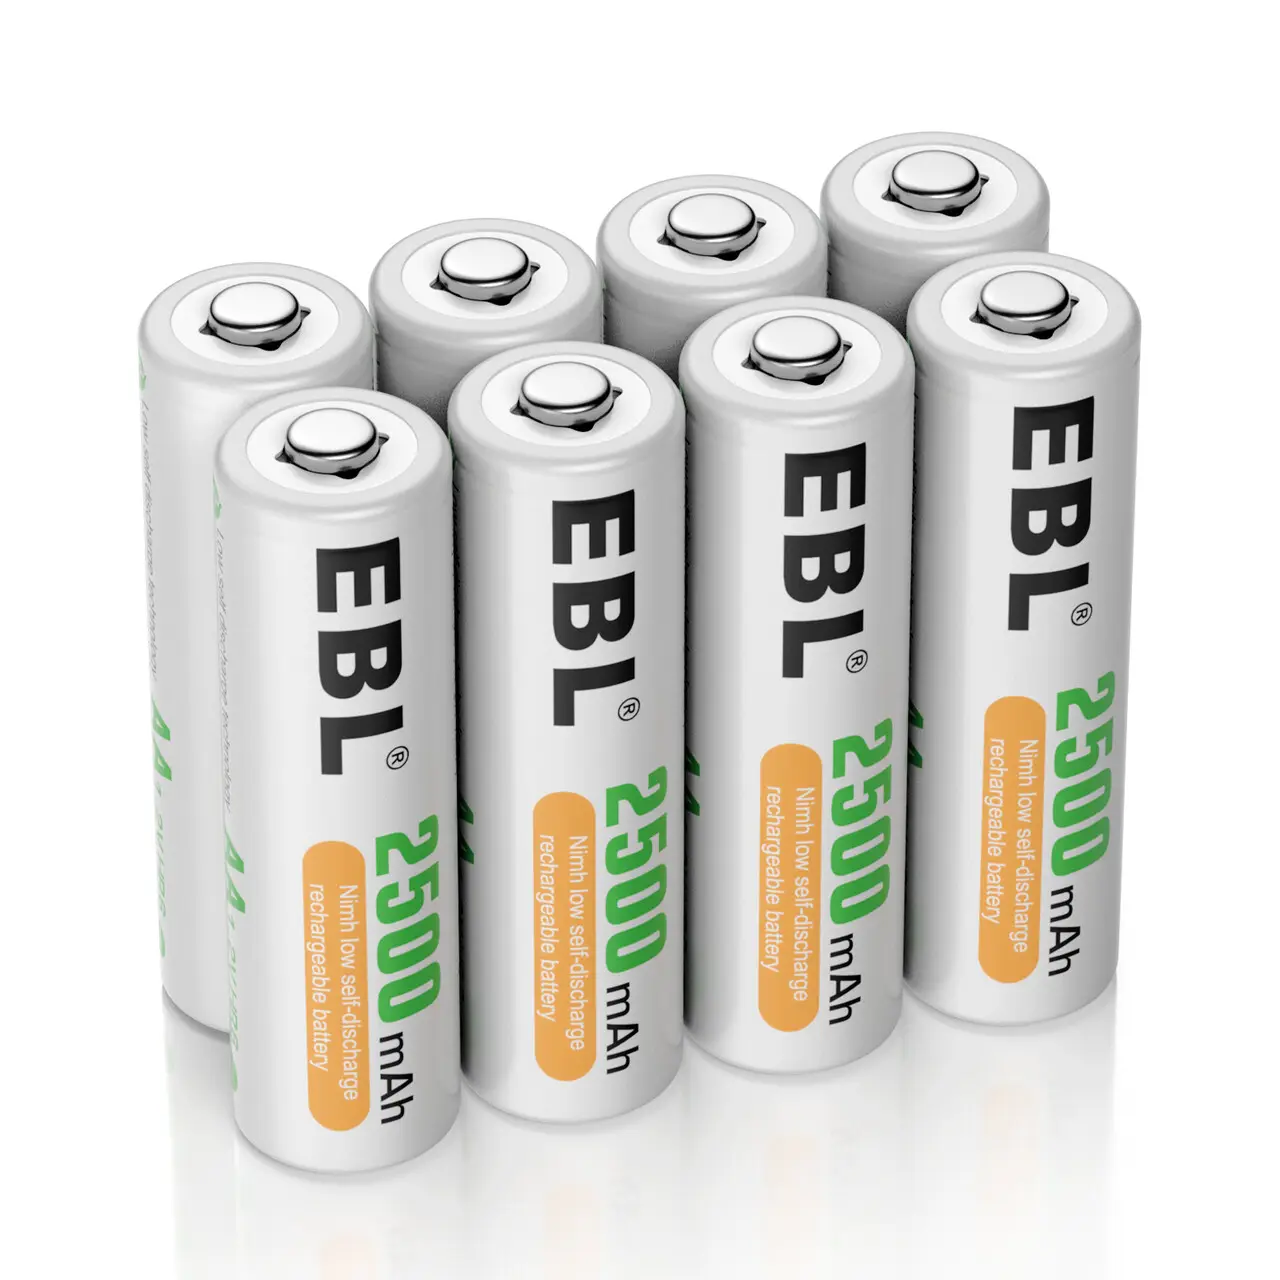 EBL yüksek performanslı 8 paket 1.2v AA 2500mAh şarj edilebilir piller önceden şarj edilmiş AA piller